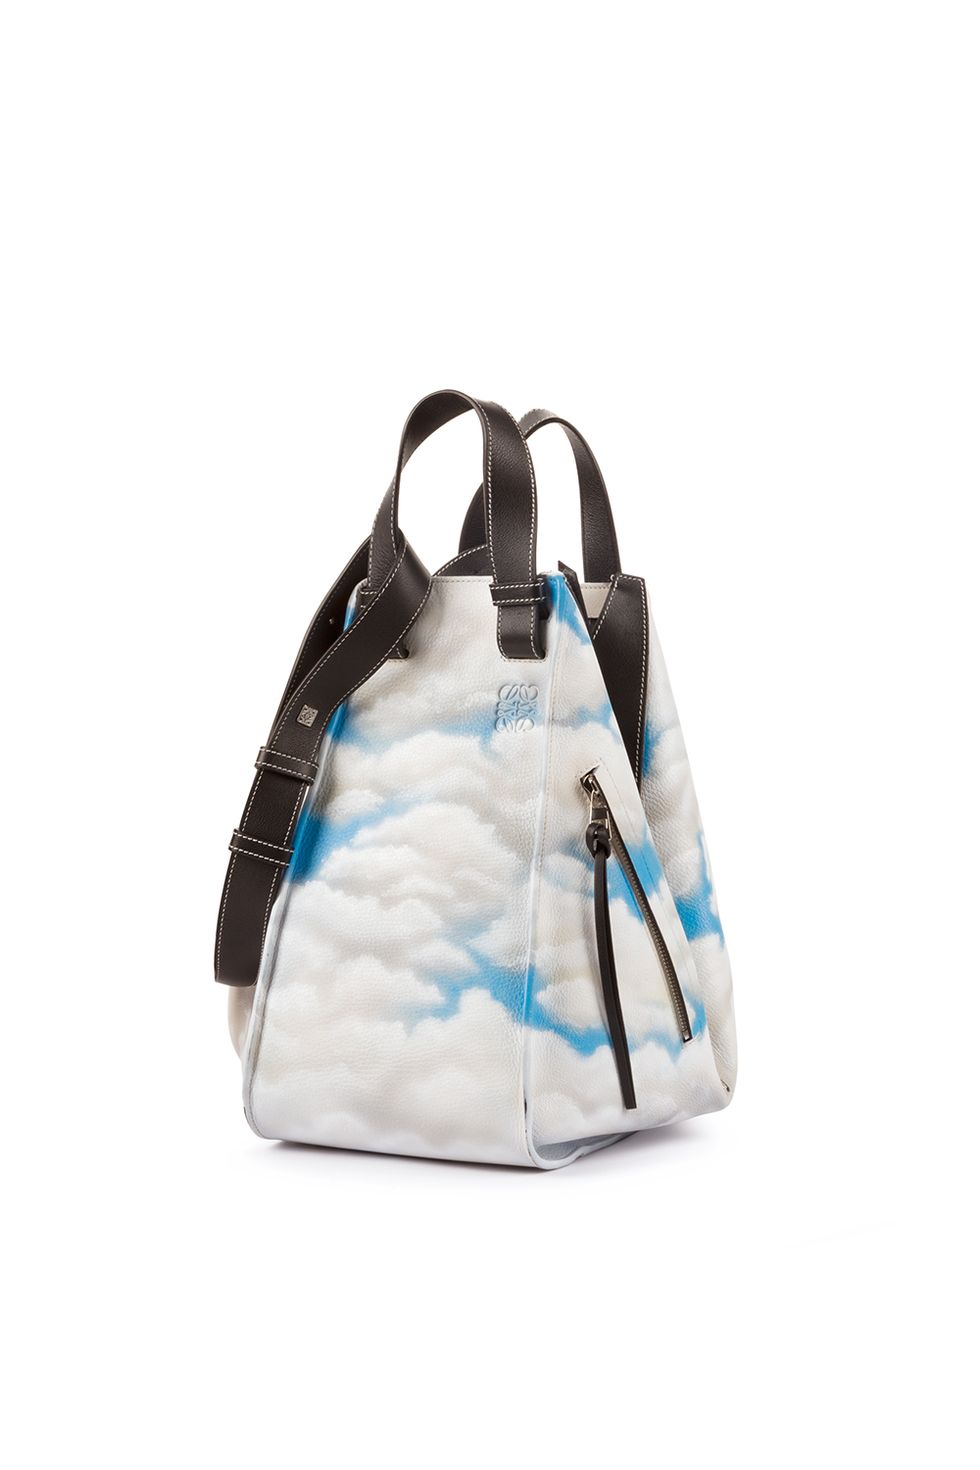 <p>Direttamente dalle passerelle, questa nuova borsa Hammock presenta una nuvola stampata su morbida pelle. L'ampio design della borsa è forse il suo aspetto&nbsp;migliore. La stampa con le nuvole si abbina con tutto e sarà sorprendentemente facile portarla ogni giorno.</p>